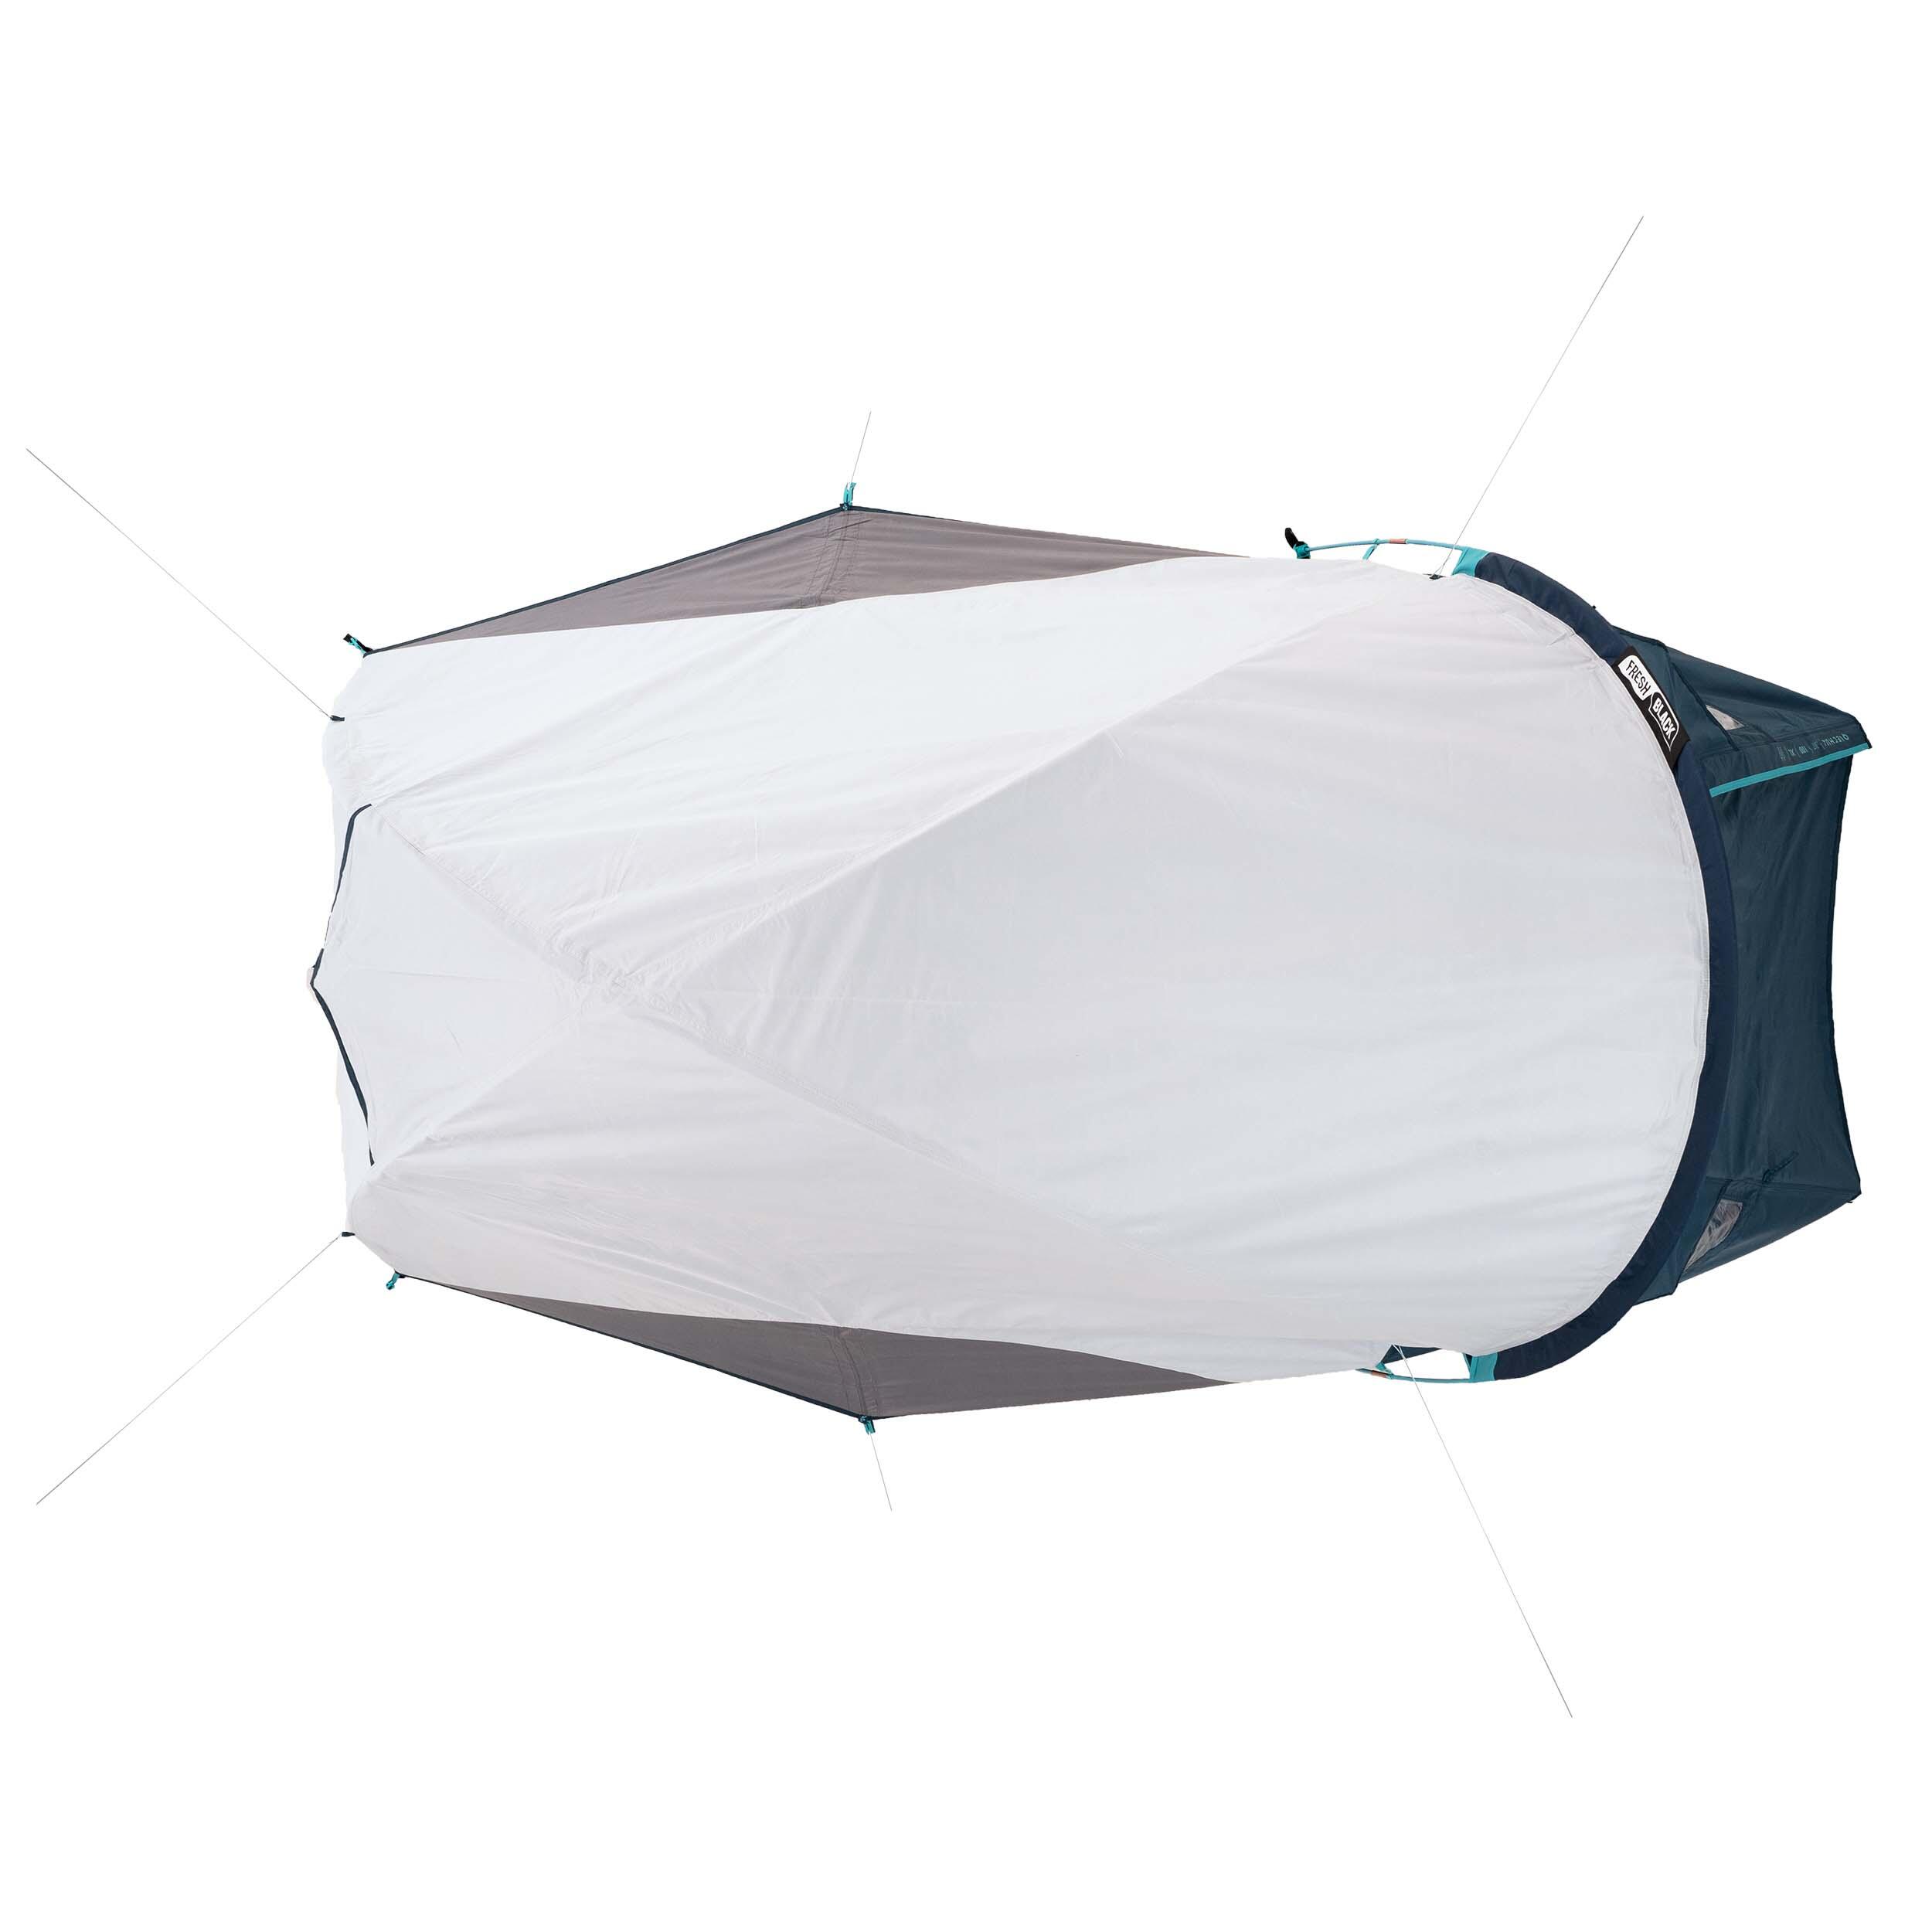 Camping tent MH100 XL - 2-P - Fresh&Black 17/19